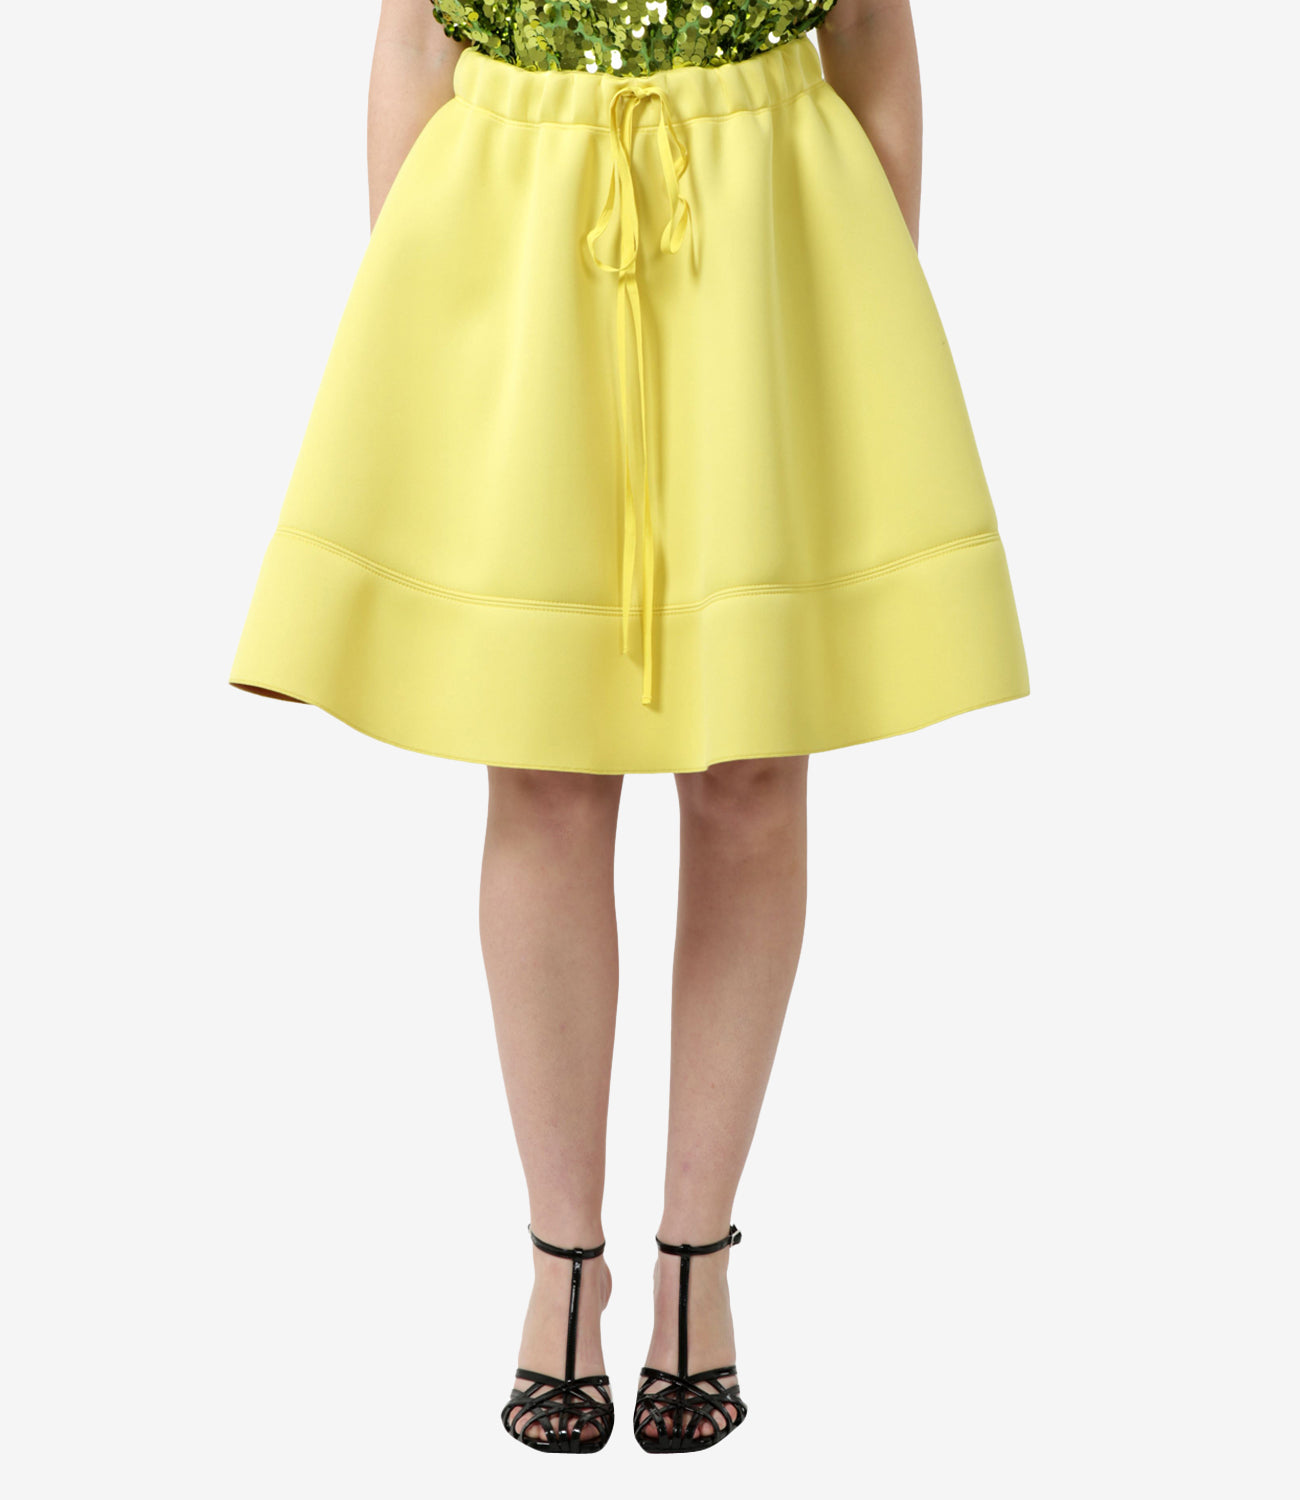 N 21 | Yellow Skirt